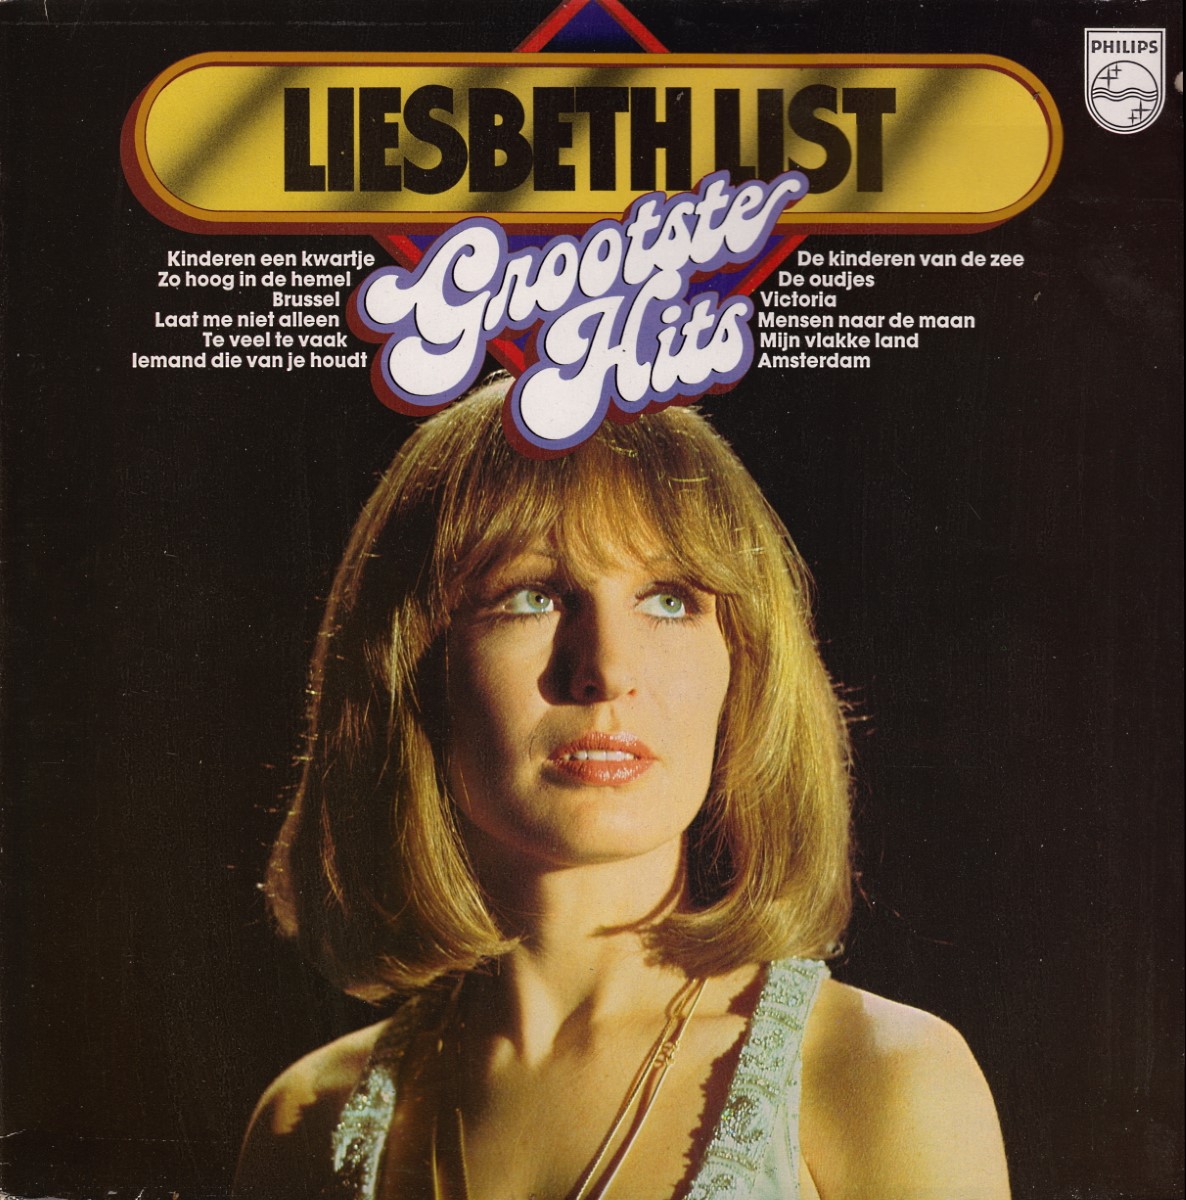 Liesbeth List - Grootste Hits (1978)